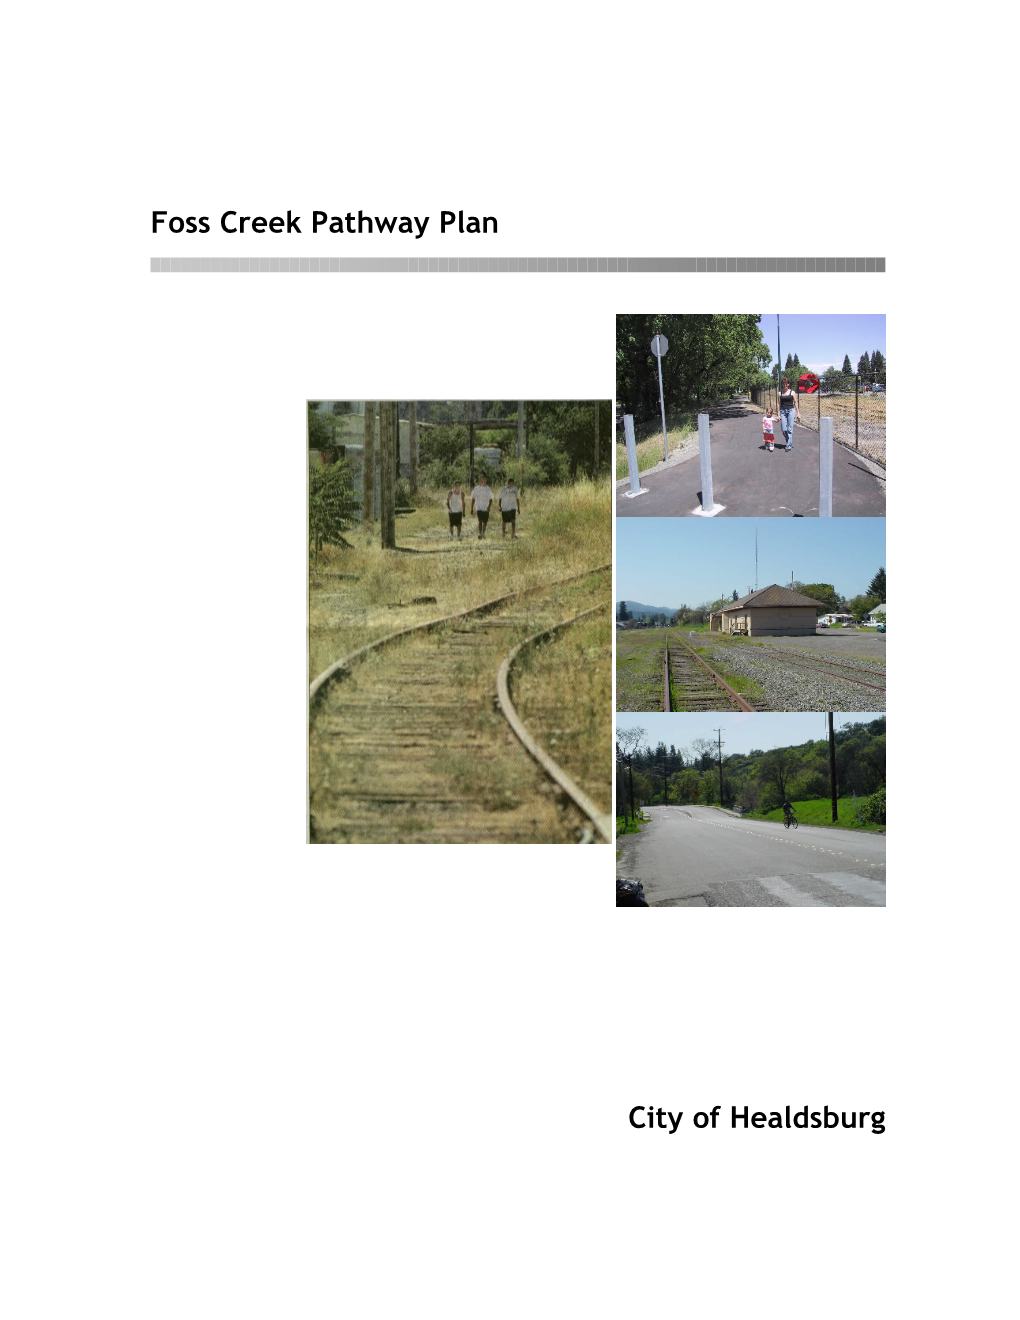 Foss Creek Pathway Plan Final